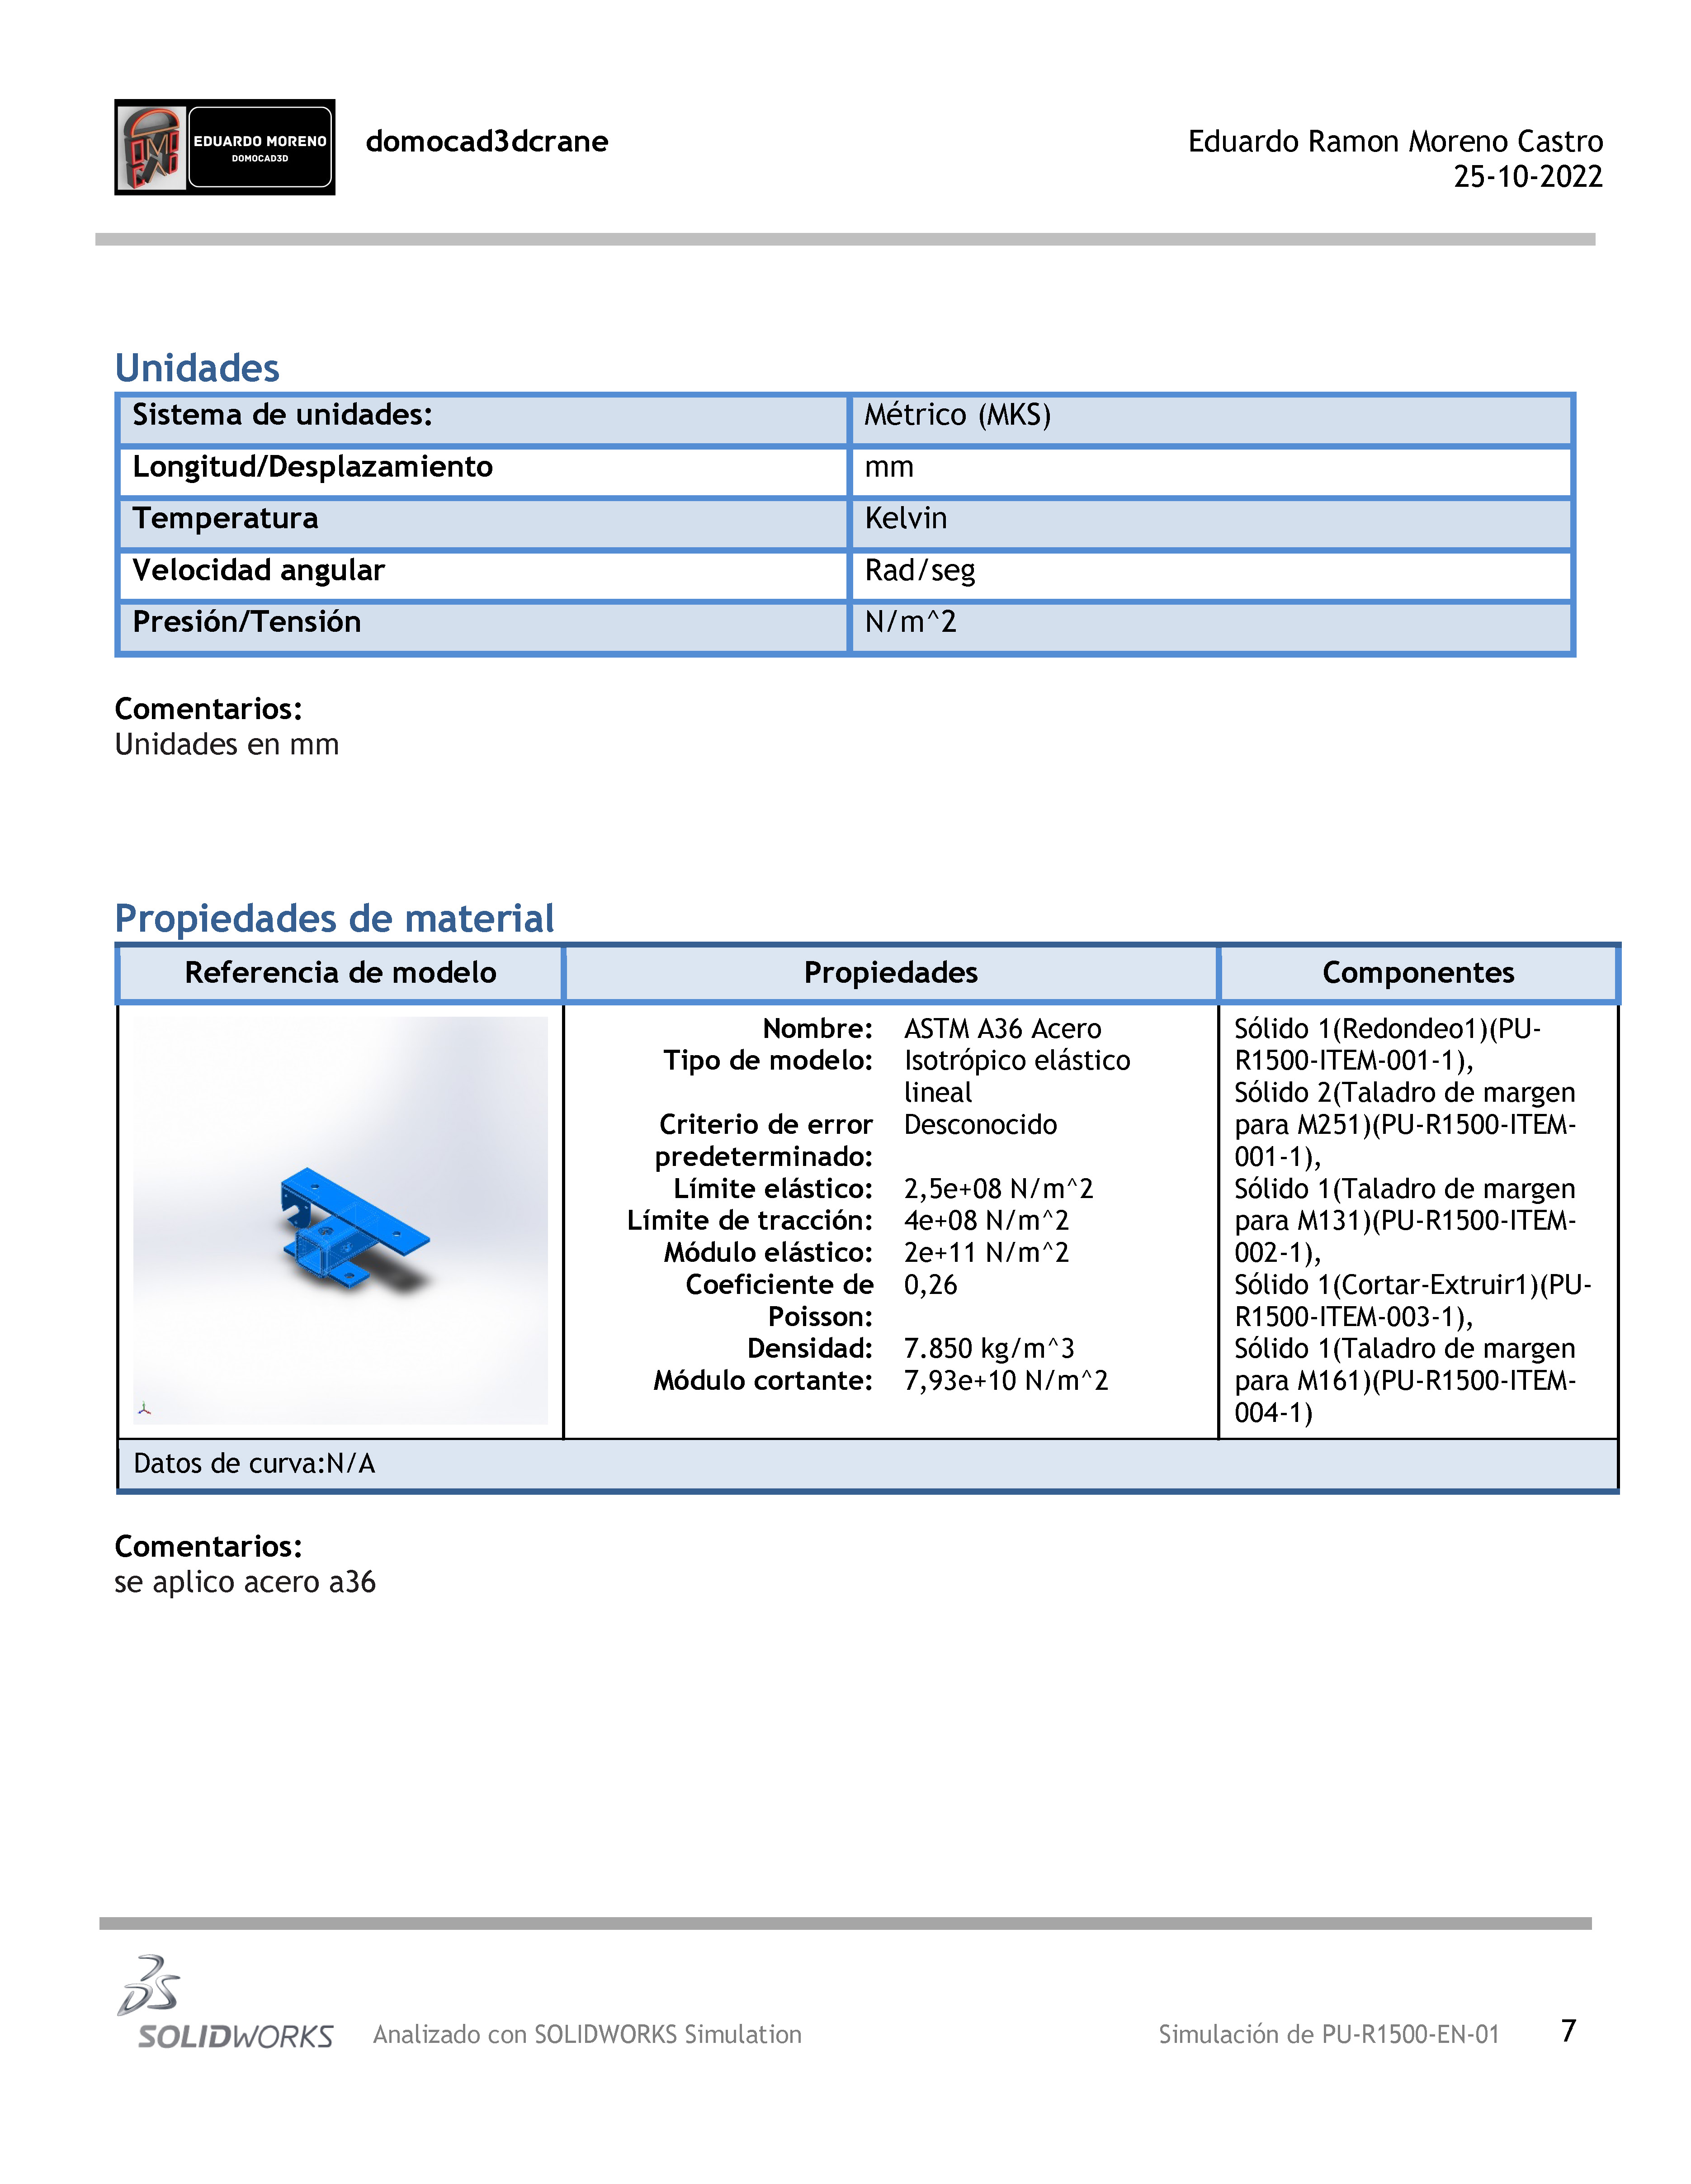 0 — domocad3dcrane Eduardo Ramon Moreno Castro
25-10-2022

Unidades

Comentarios:
Unidades en mm

 

Propiedades de material

Referencia de modelo Propiedades

Nombre: ASTM A36 Acero Solido 1(Redondeo1)(PU-
Tipo de modelo: Isotropico elastico R1500-ITEM-001-1),
lineal Solido 2(Taladro de margen
Criterio de error Desconocido para M251)(PU-R1500-ITEM-
predeterminado: 001-1),
Limite elastico: 2,5e+08 N/m"2 Solido 1(Taladro de margen
Limite de traccion: 4e+08 N/m"2 para M131)(PU-R1500-ITEM-
Moddulo elastico: 2e+11 N/m”"2 002-1),
Coeficiente de 0,26 Solido 1(Cortar-Extruir1)(PU-
Poisson: R1500-ITEM-003-1),
Densidad: 7.850 kg/m"3 Sélido 1(Taladro de margen
Médulo cortante: 7,93e+10 N/m"2 para M161)(PU-R1500-ITEM-
A 004-1)

Datos de curva:N/A

 

Comentarios:
se aplico acero a36

2
235
SOLIDWORKS  Analizado con SOLIDWORKS Simulation Simulacion de PU-R1500-EN-01 7